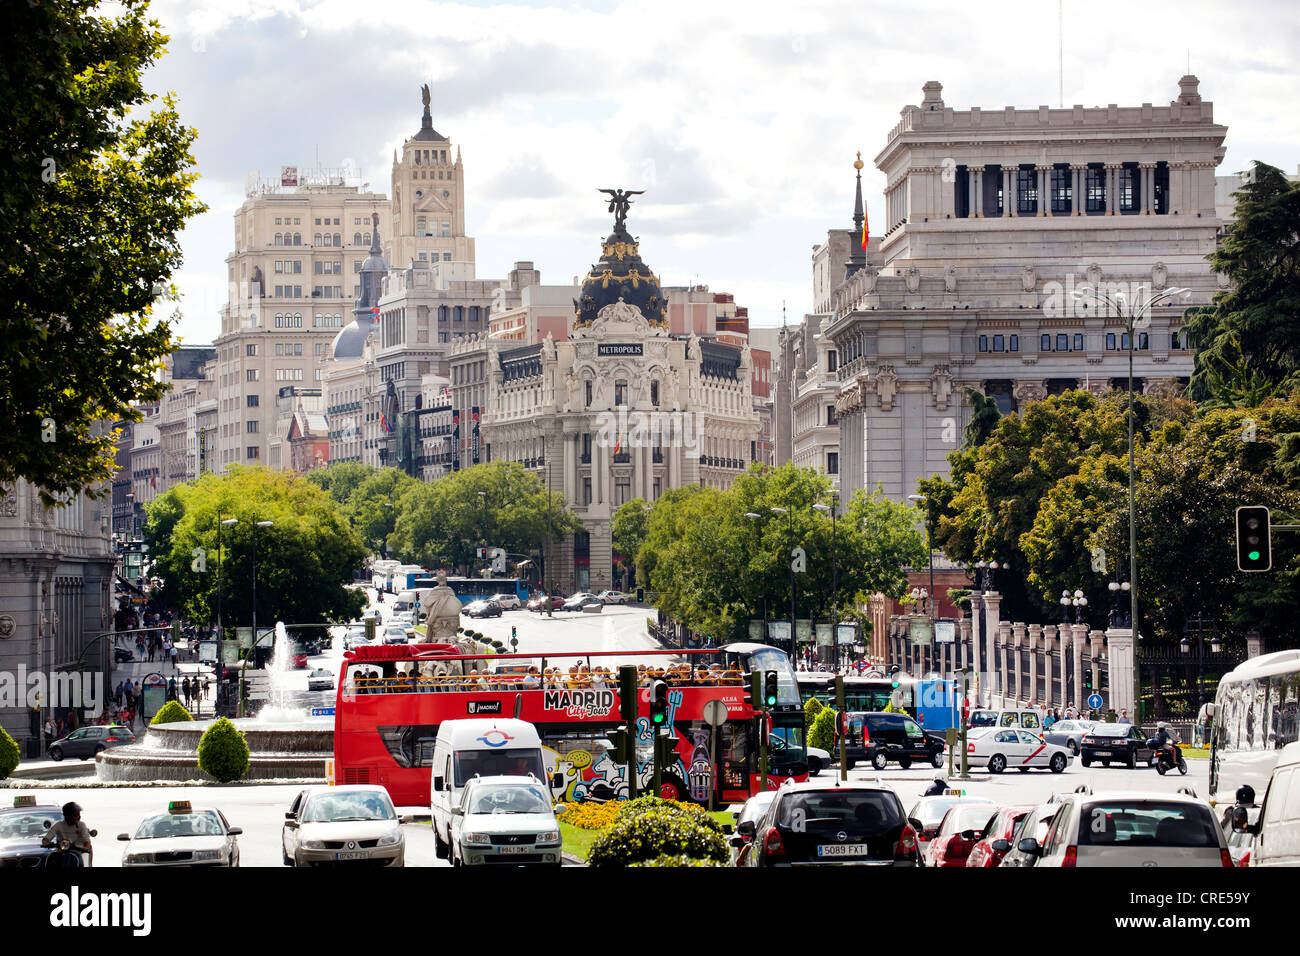 Edificio Metropolis builfding, on the grand avenue of Gran Vía and Calle de Alcala, Madrid, Spain, Europe Stock Photo